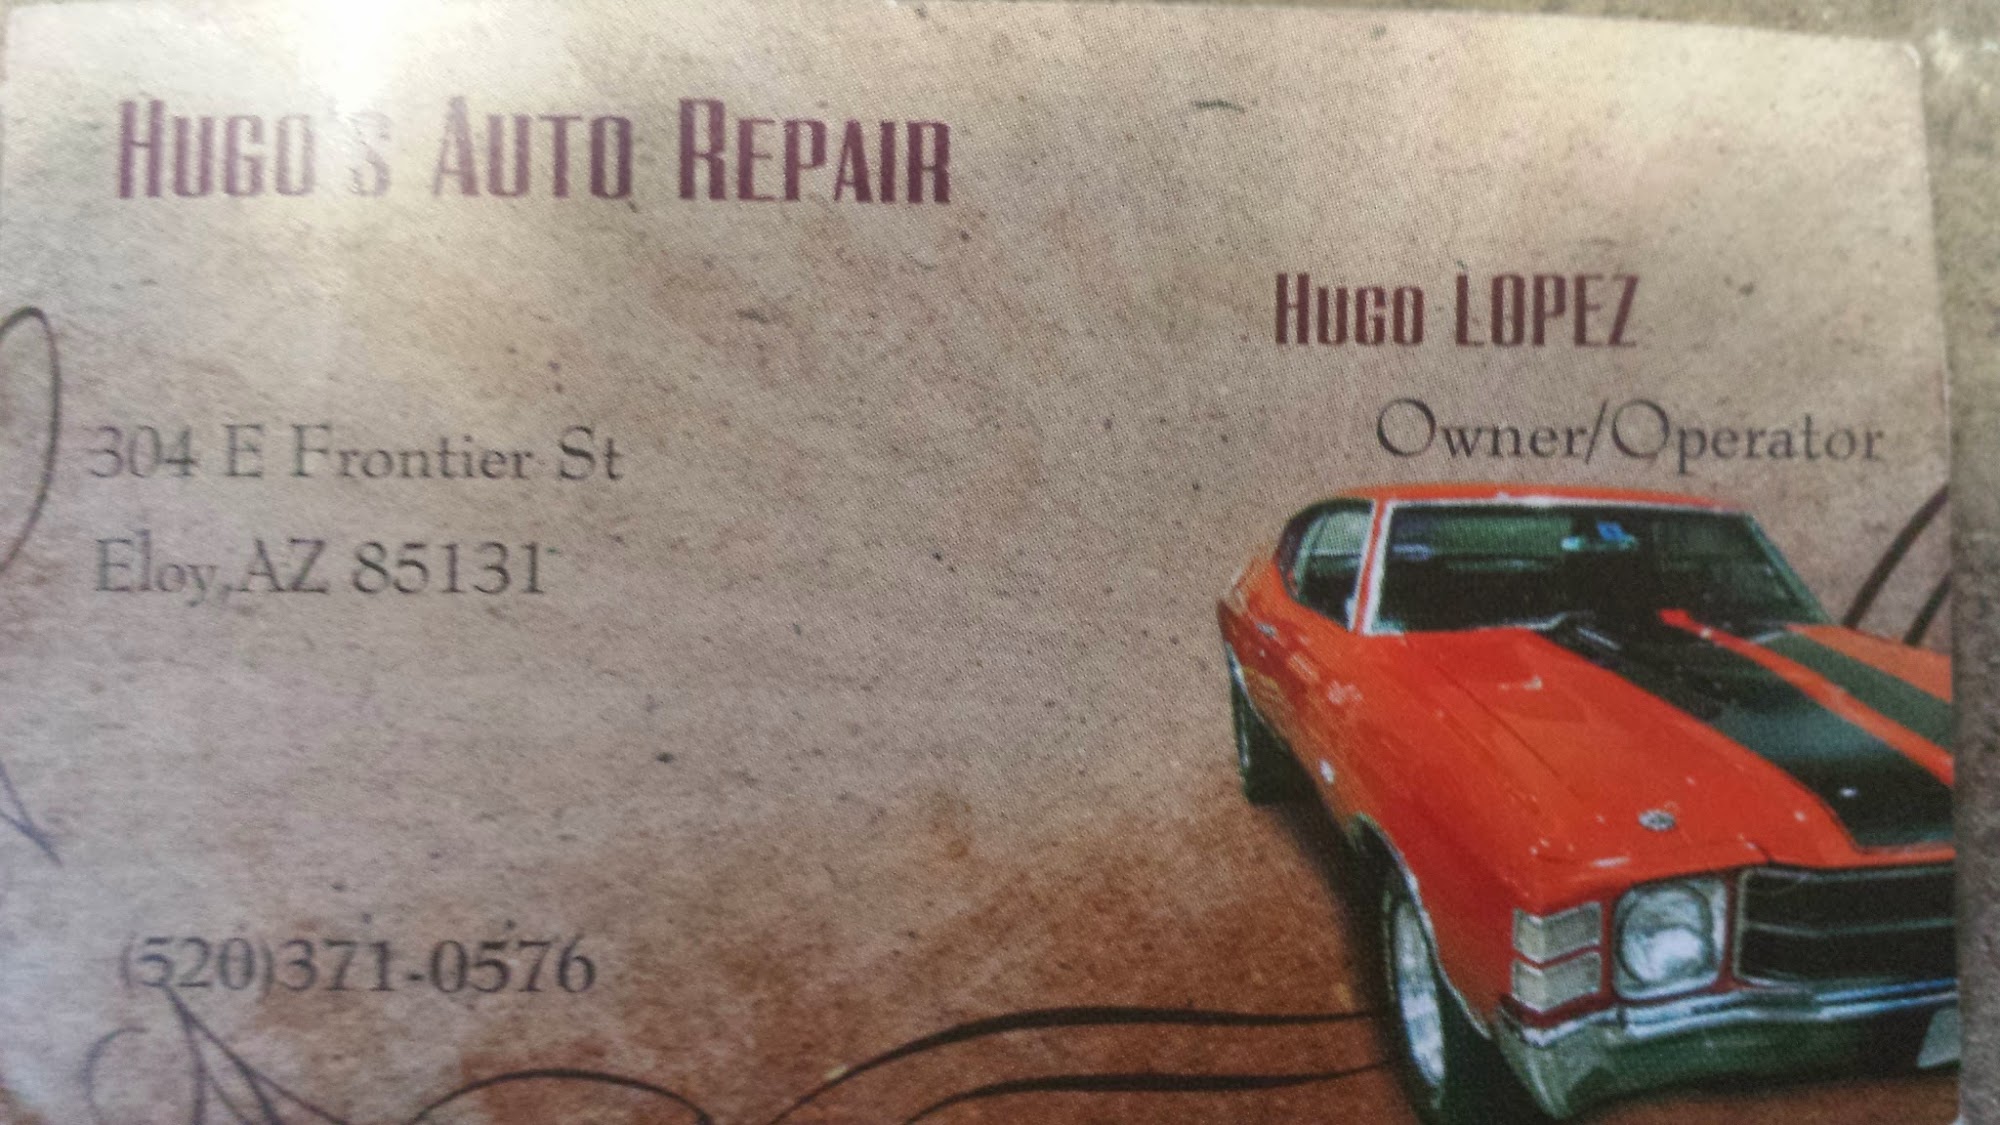 Hugos Auto Repair